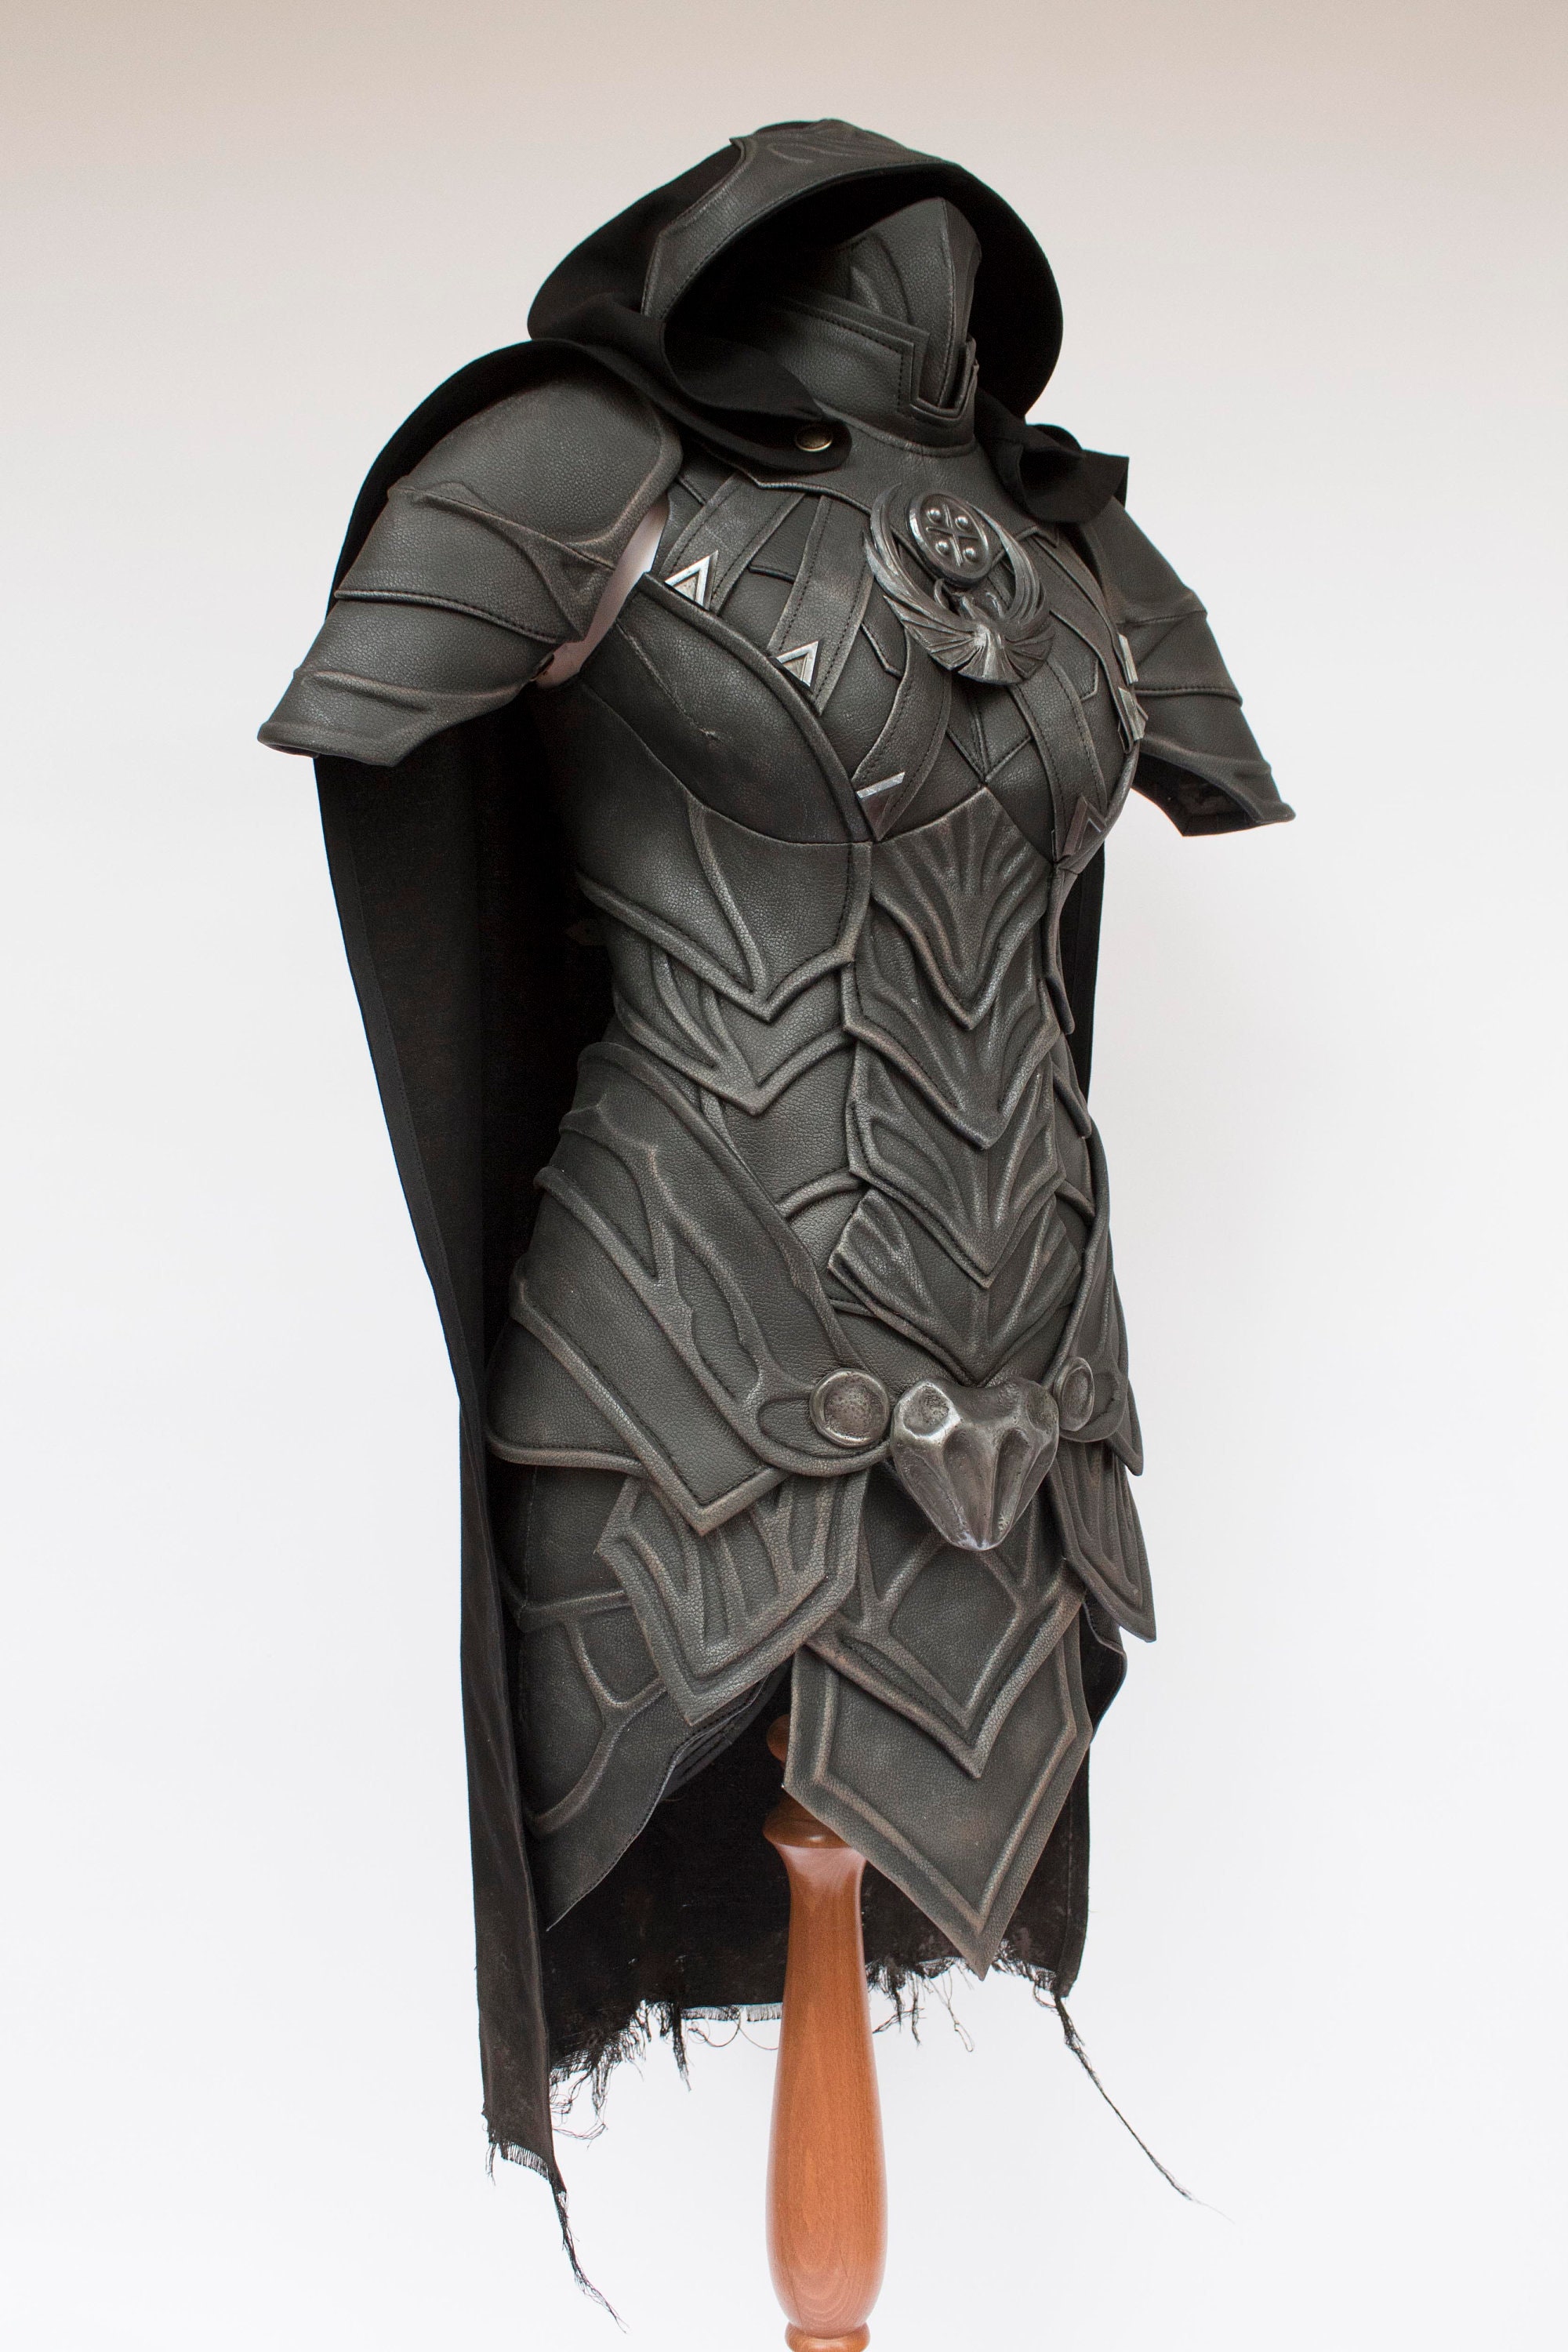 Skyrim Nightingale Armor Male